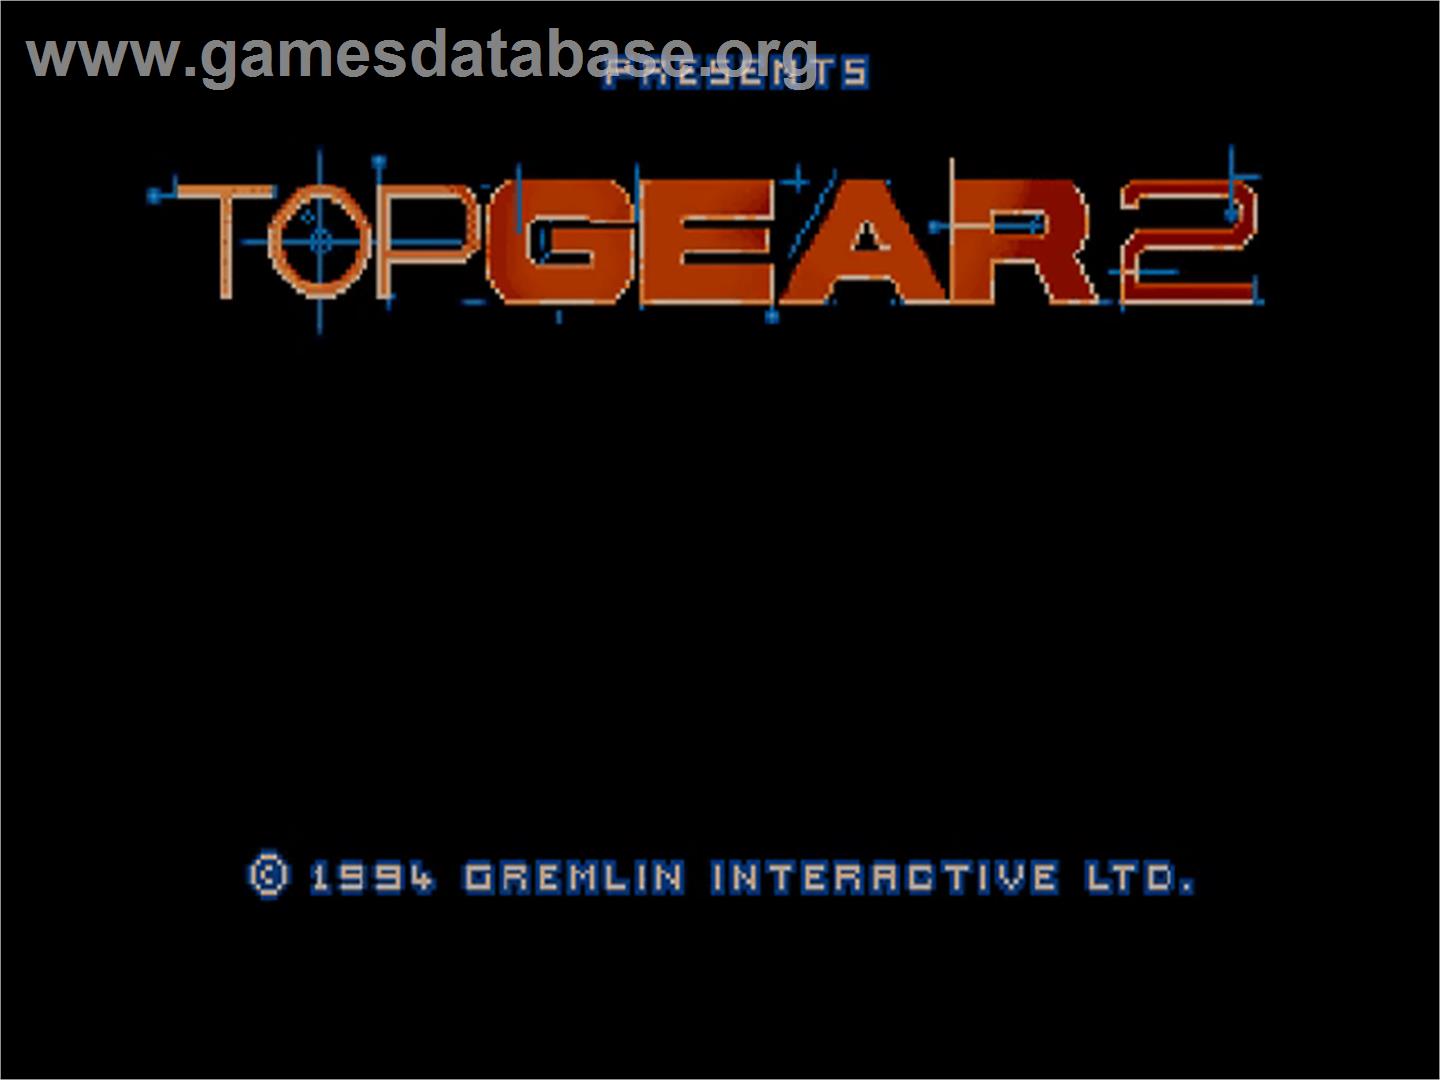 Top Gear 2 - Commodore Amiga CD32 - Artwork - Title Screen